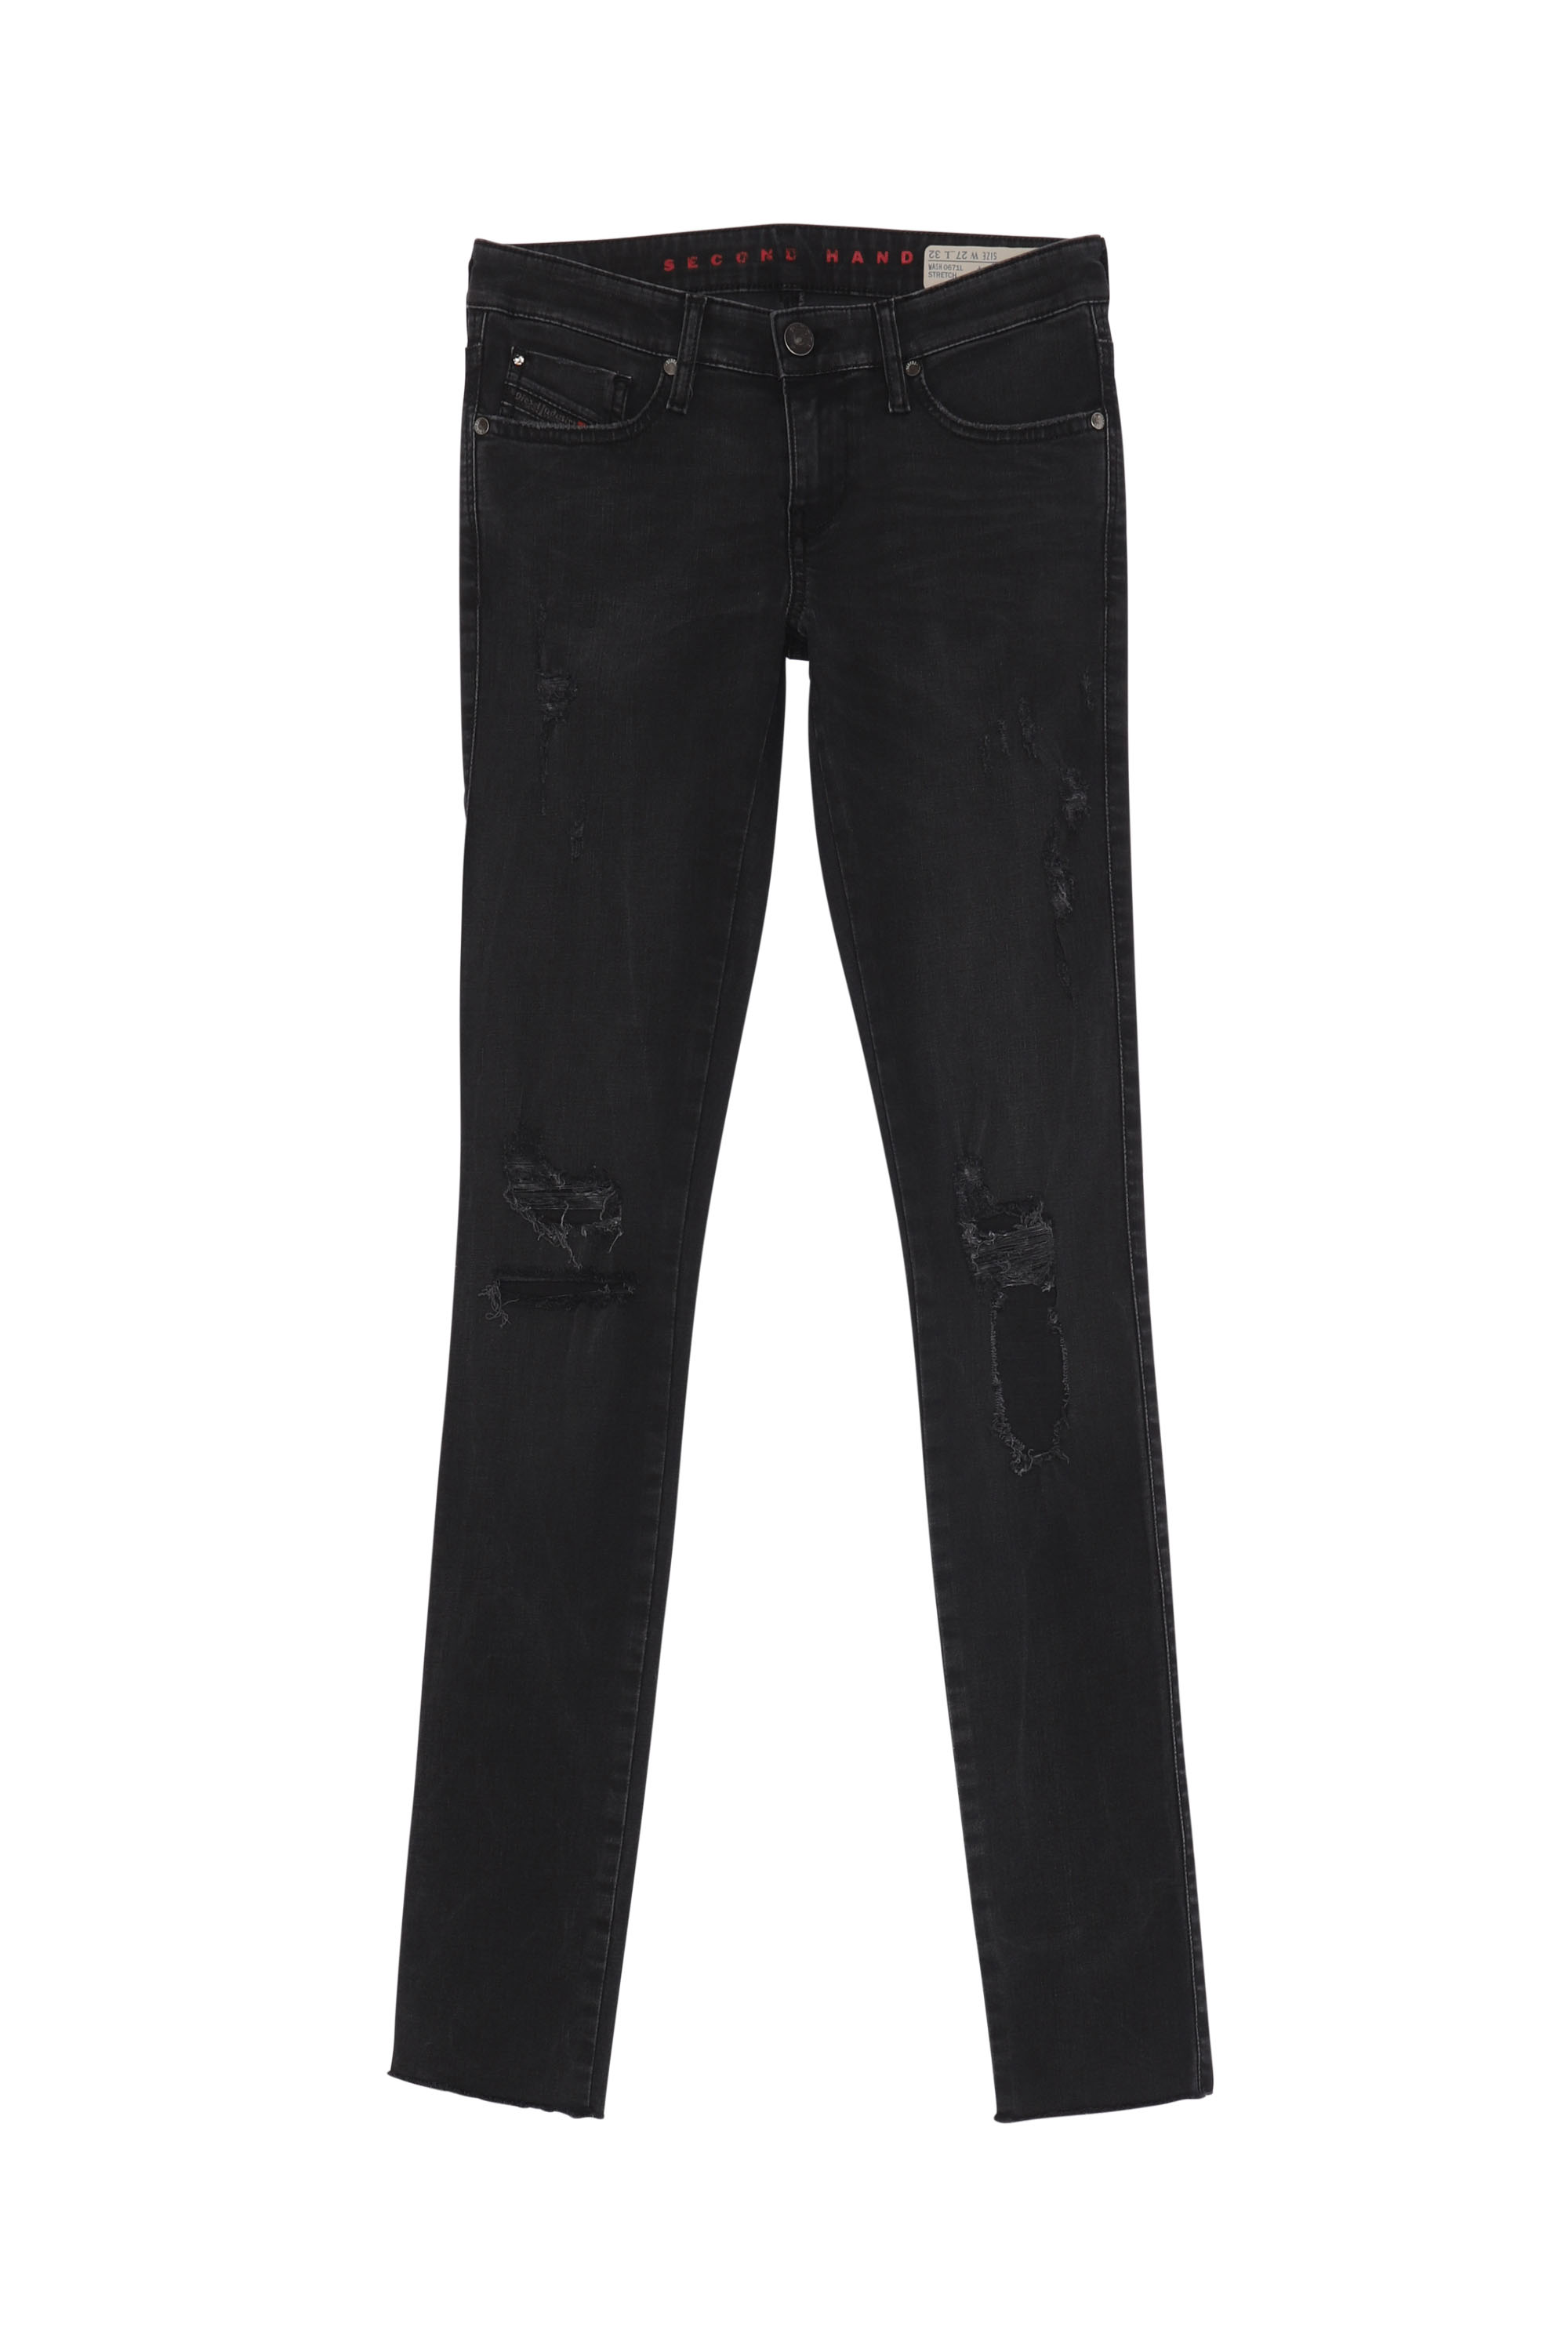 SKINZEE-LOW, Black/Dark grey - Jeans